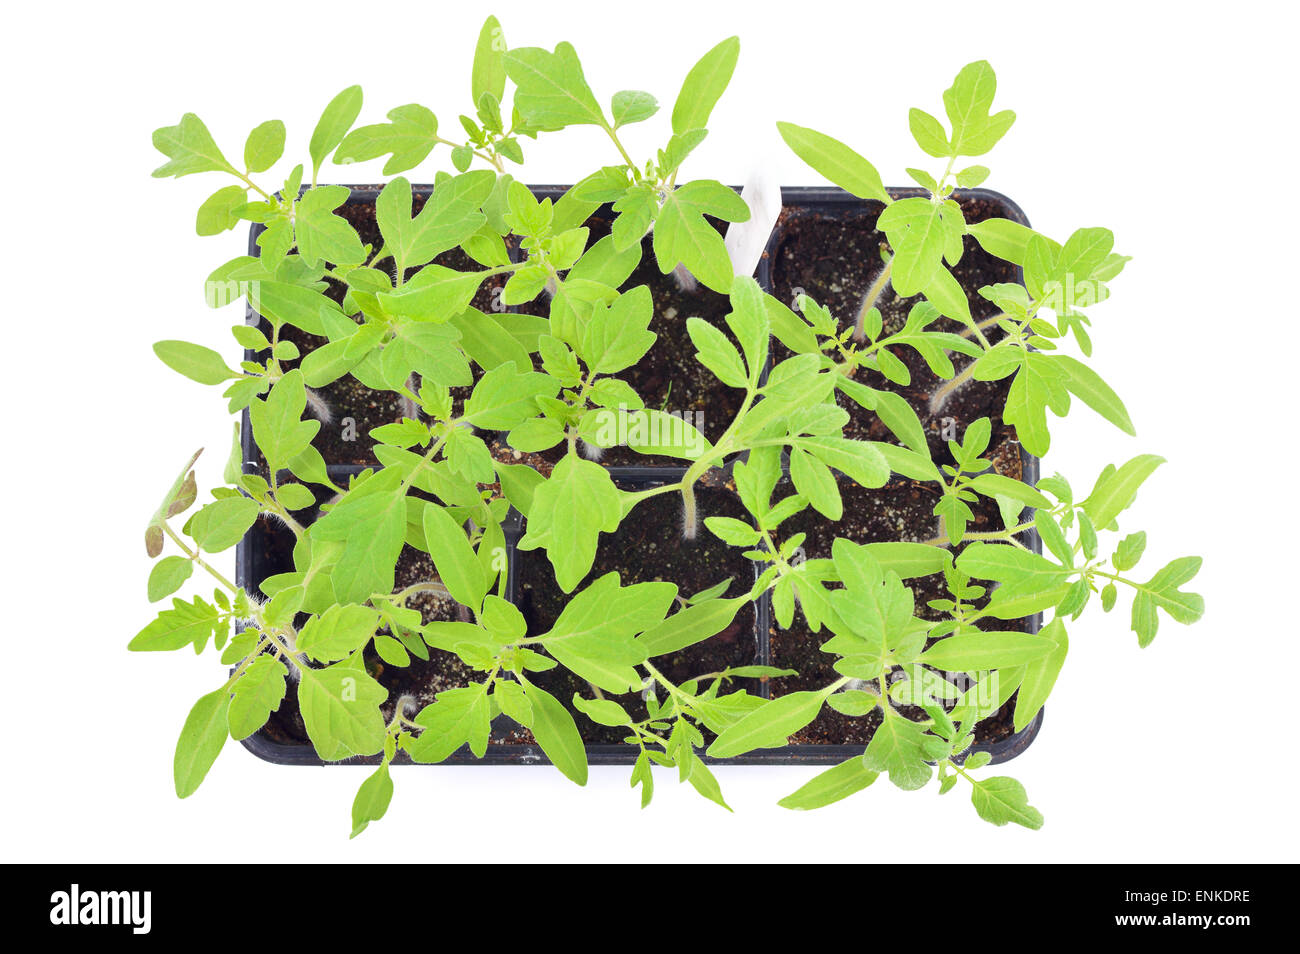 Les semis de tomates dans un pot isolé sur fond blanc. Les jeunes plantes dans les cellules en plastique, le jardinage biologique. Vue d'en haut. Banque D'Images